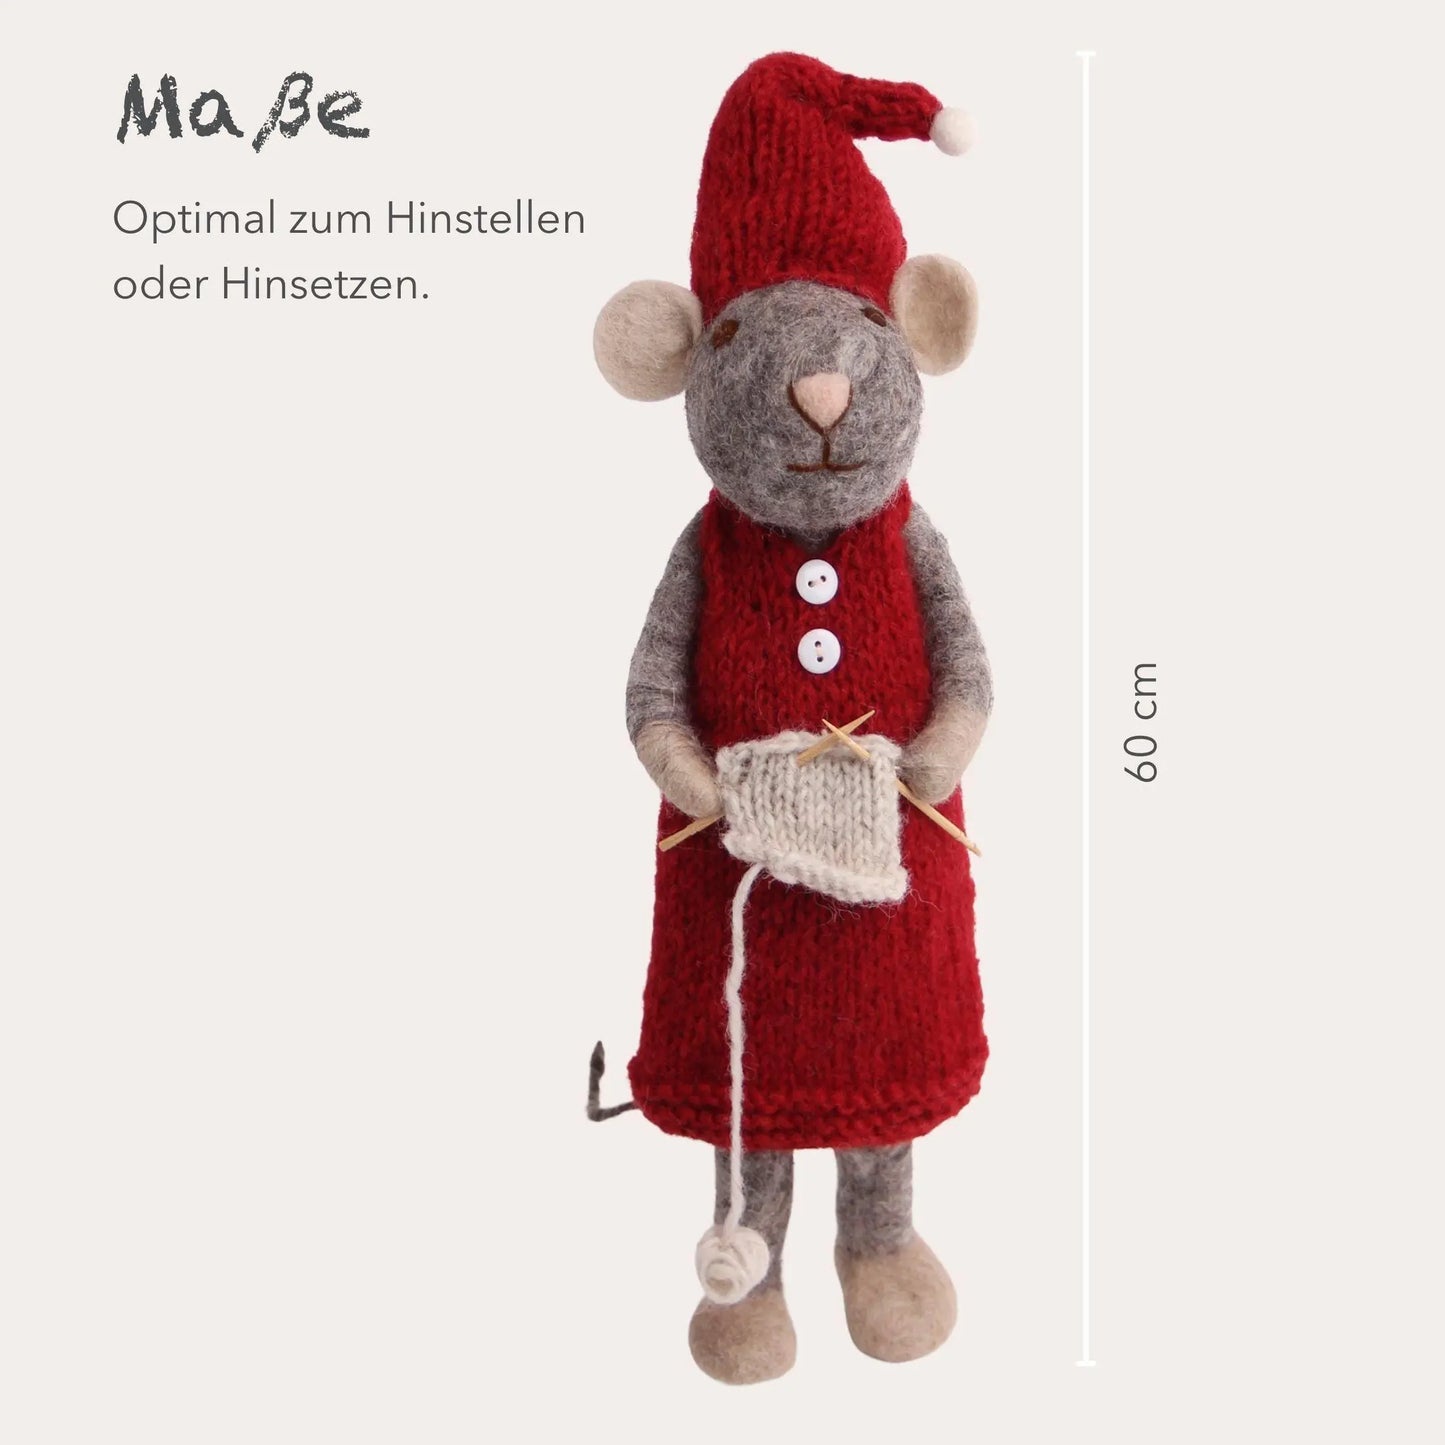 Filzlig XL Weihnachtsfigur Maus mit Strickzeug  Gry & Sif Maße